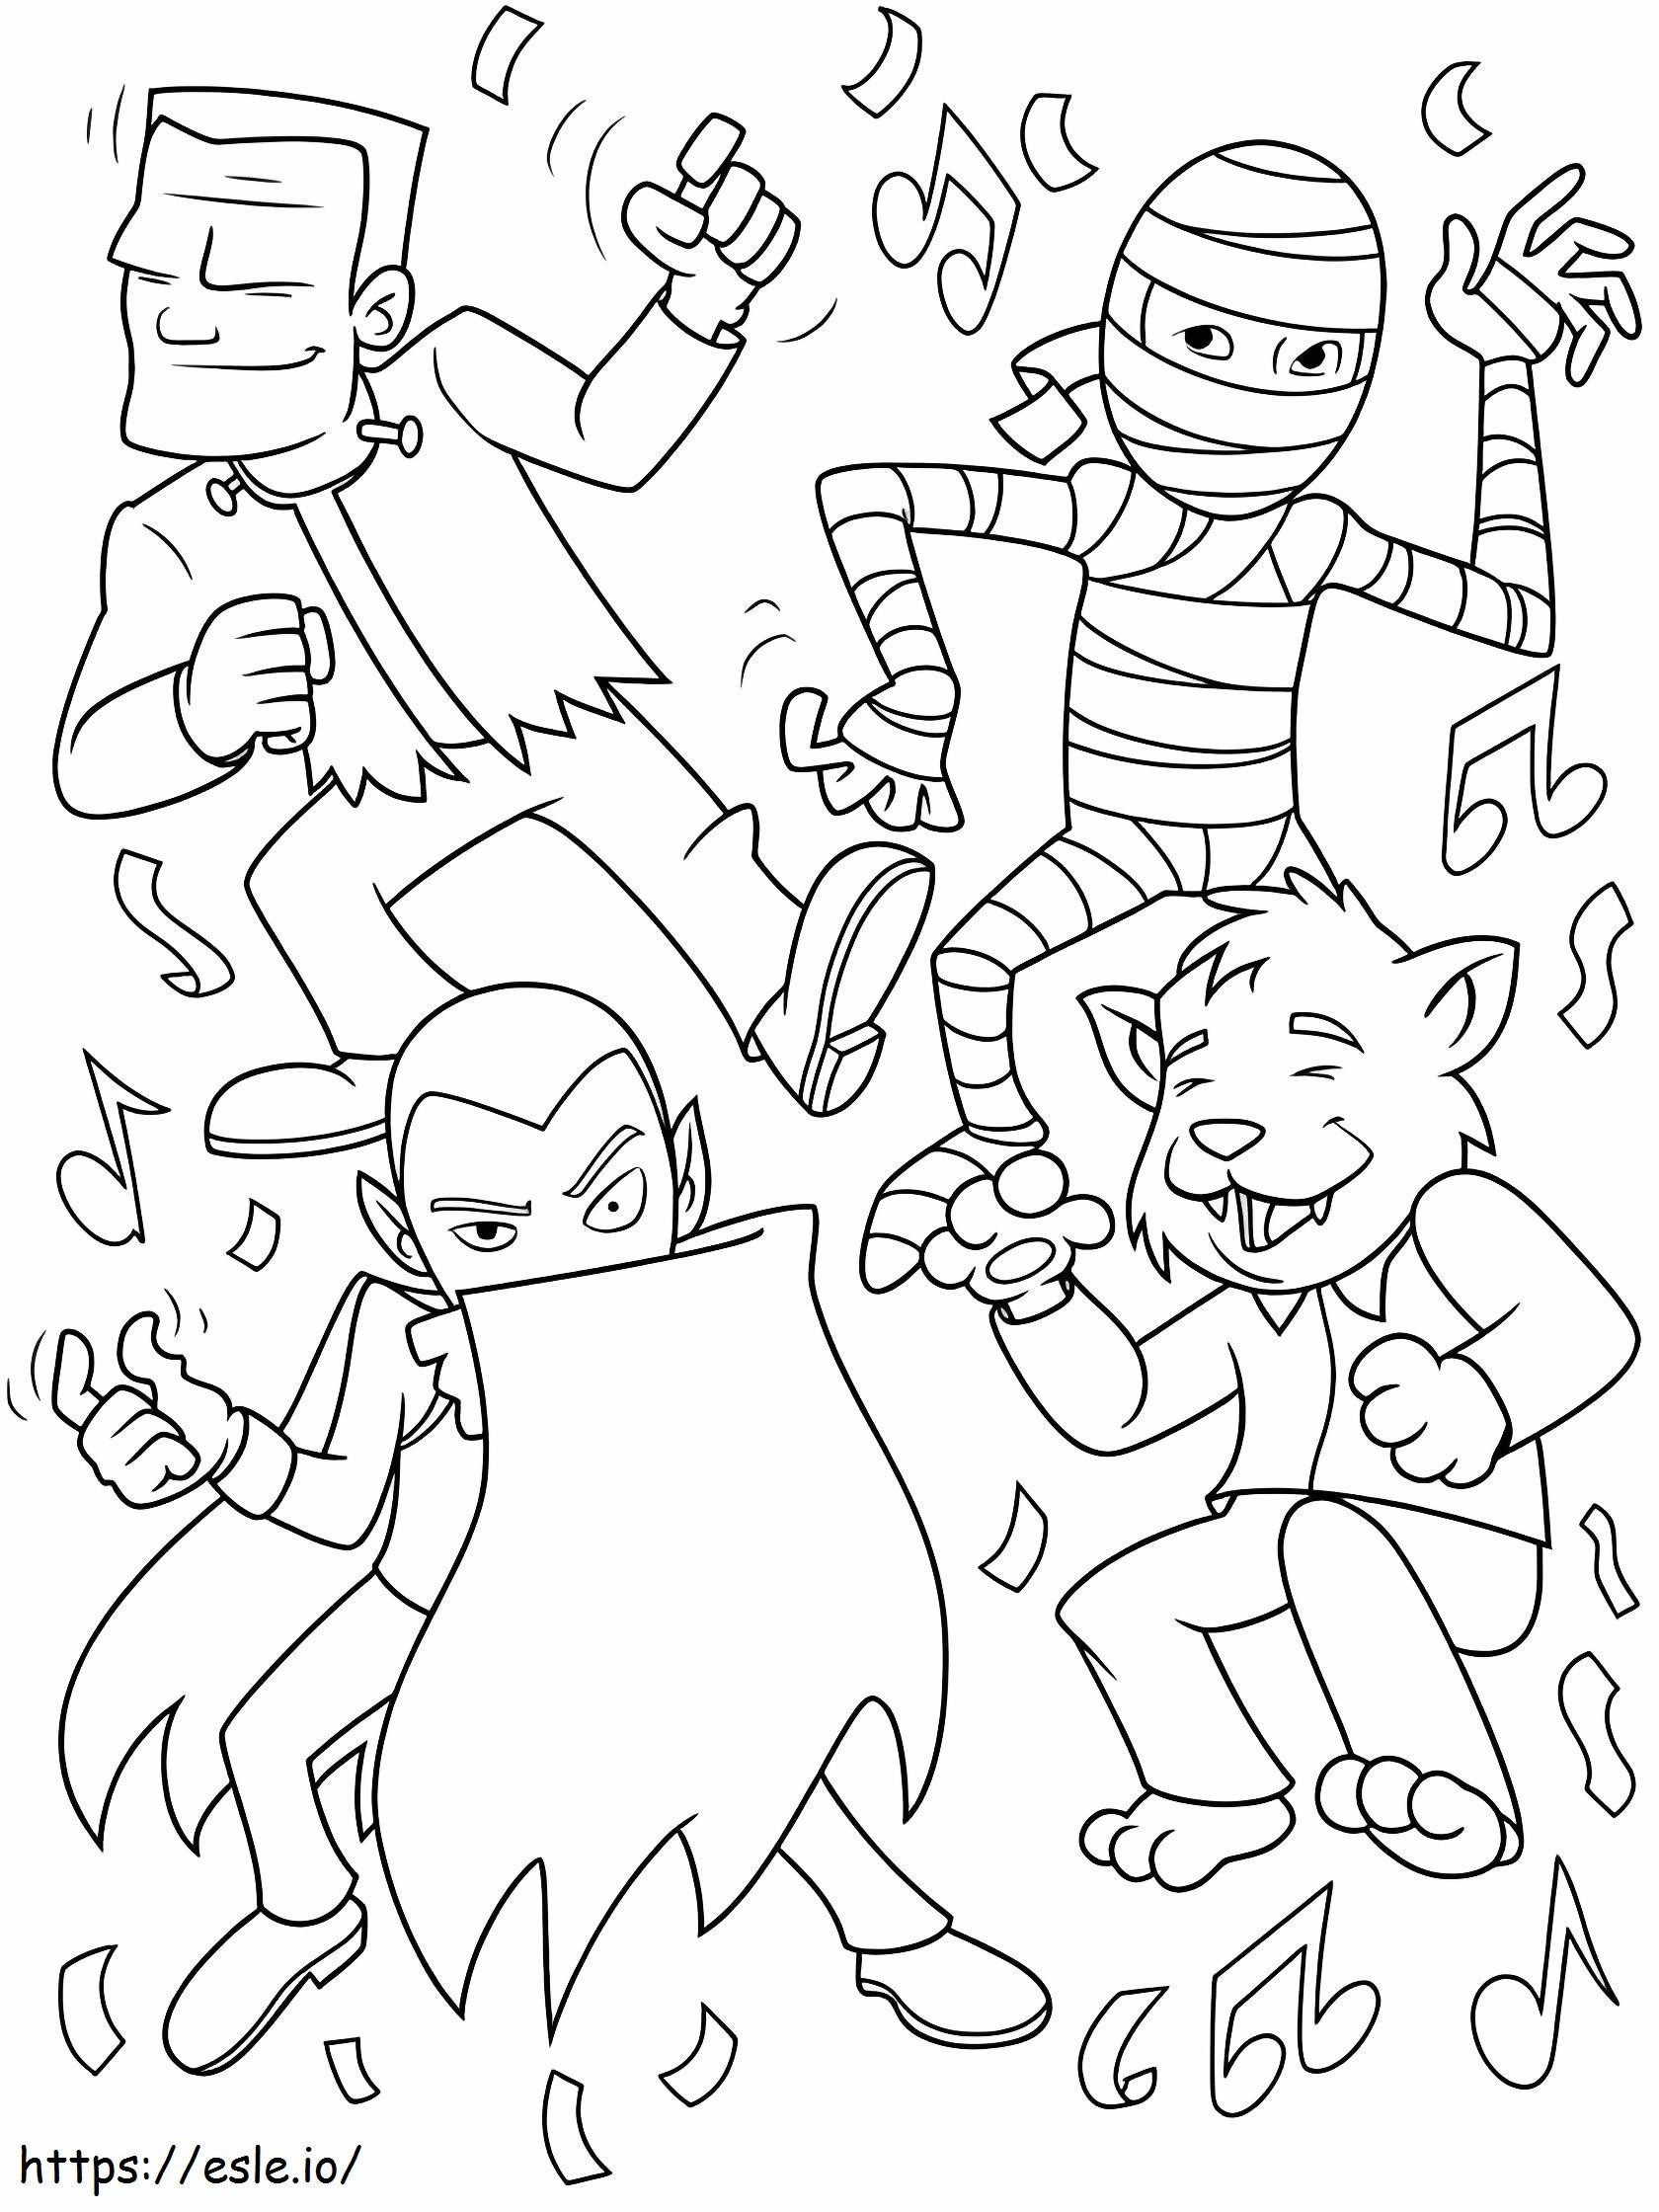 Cuatro monstruos bailan en una fiesta para colorear